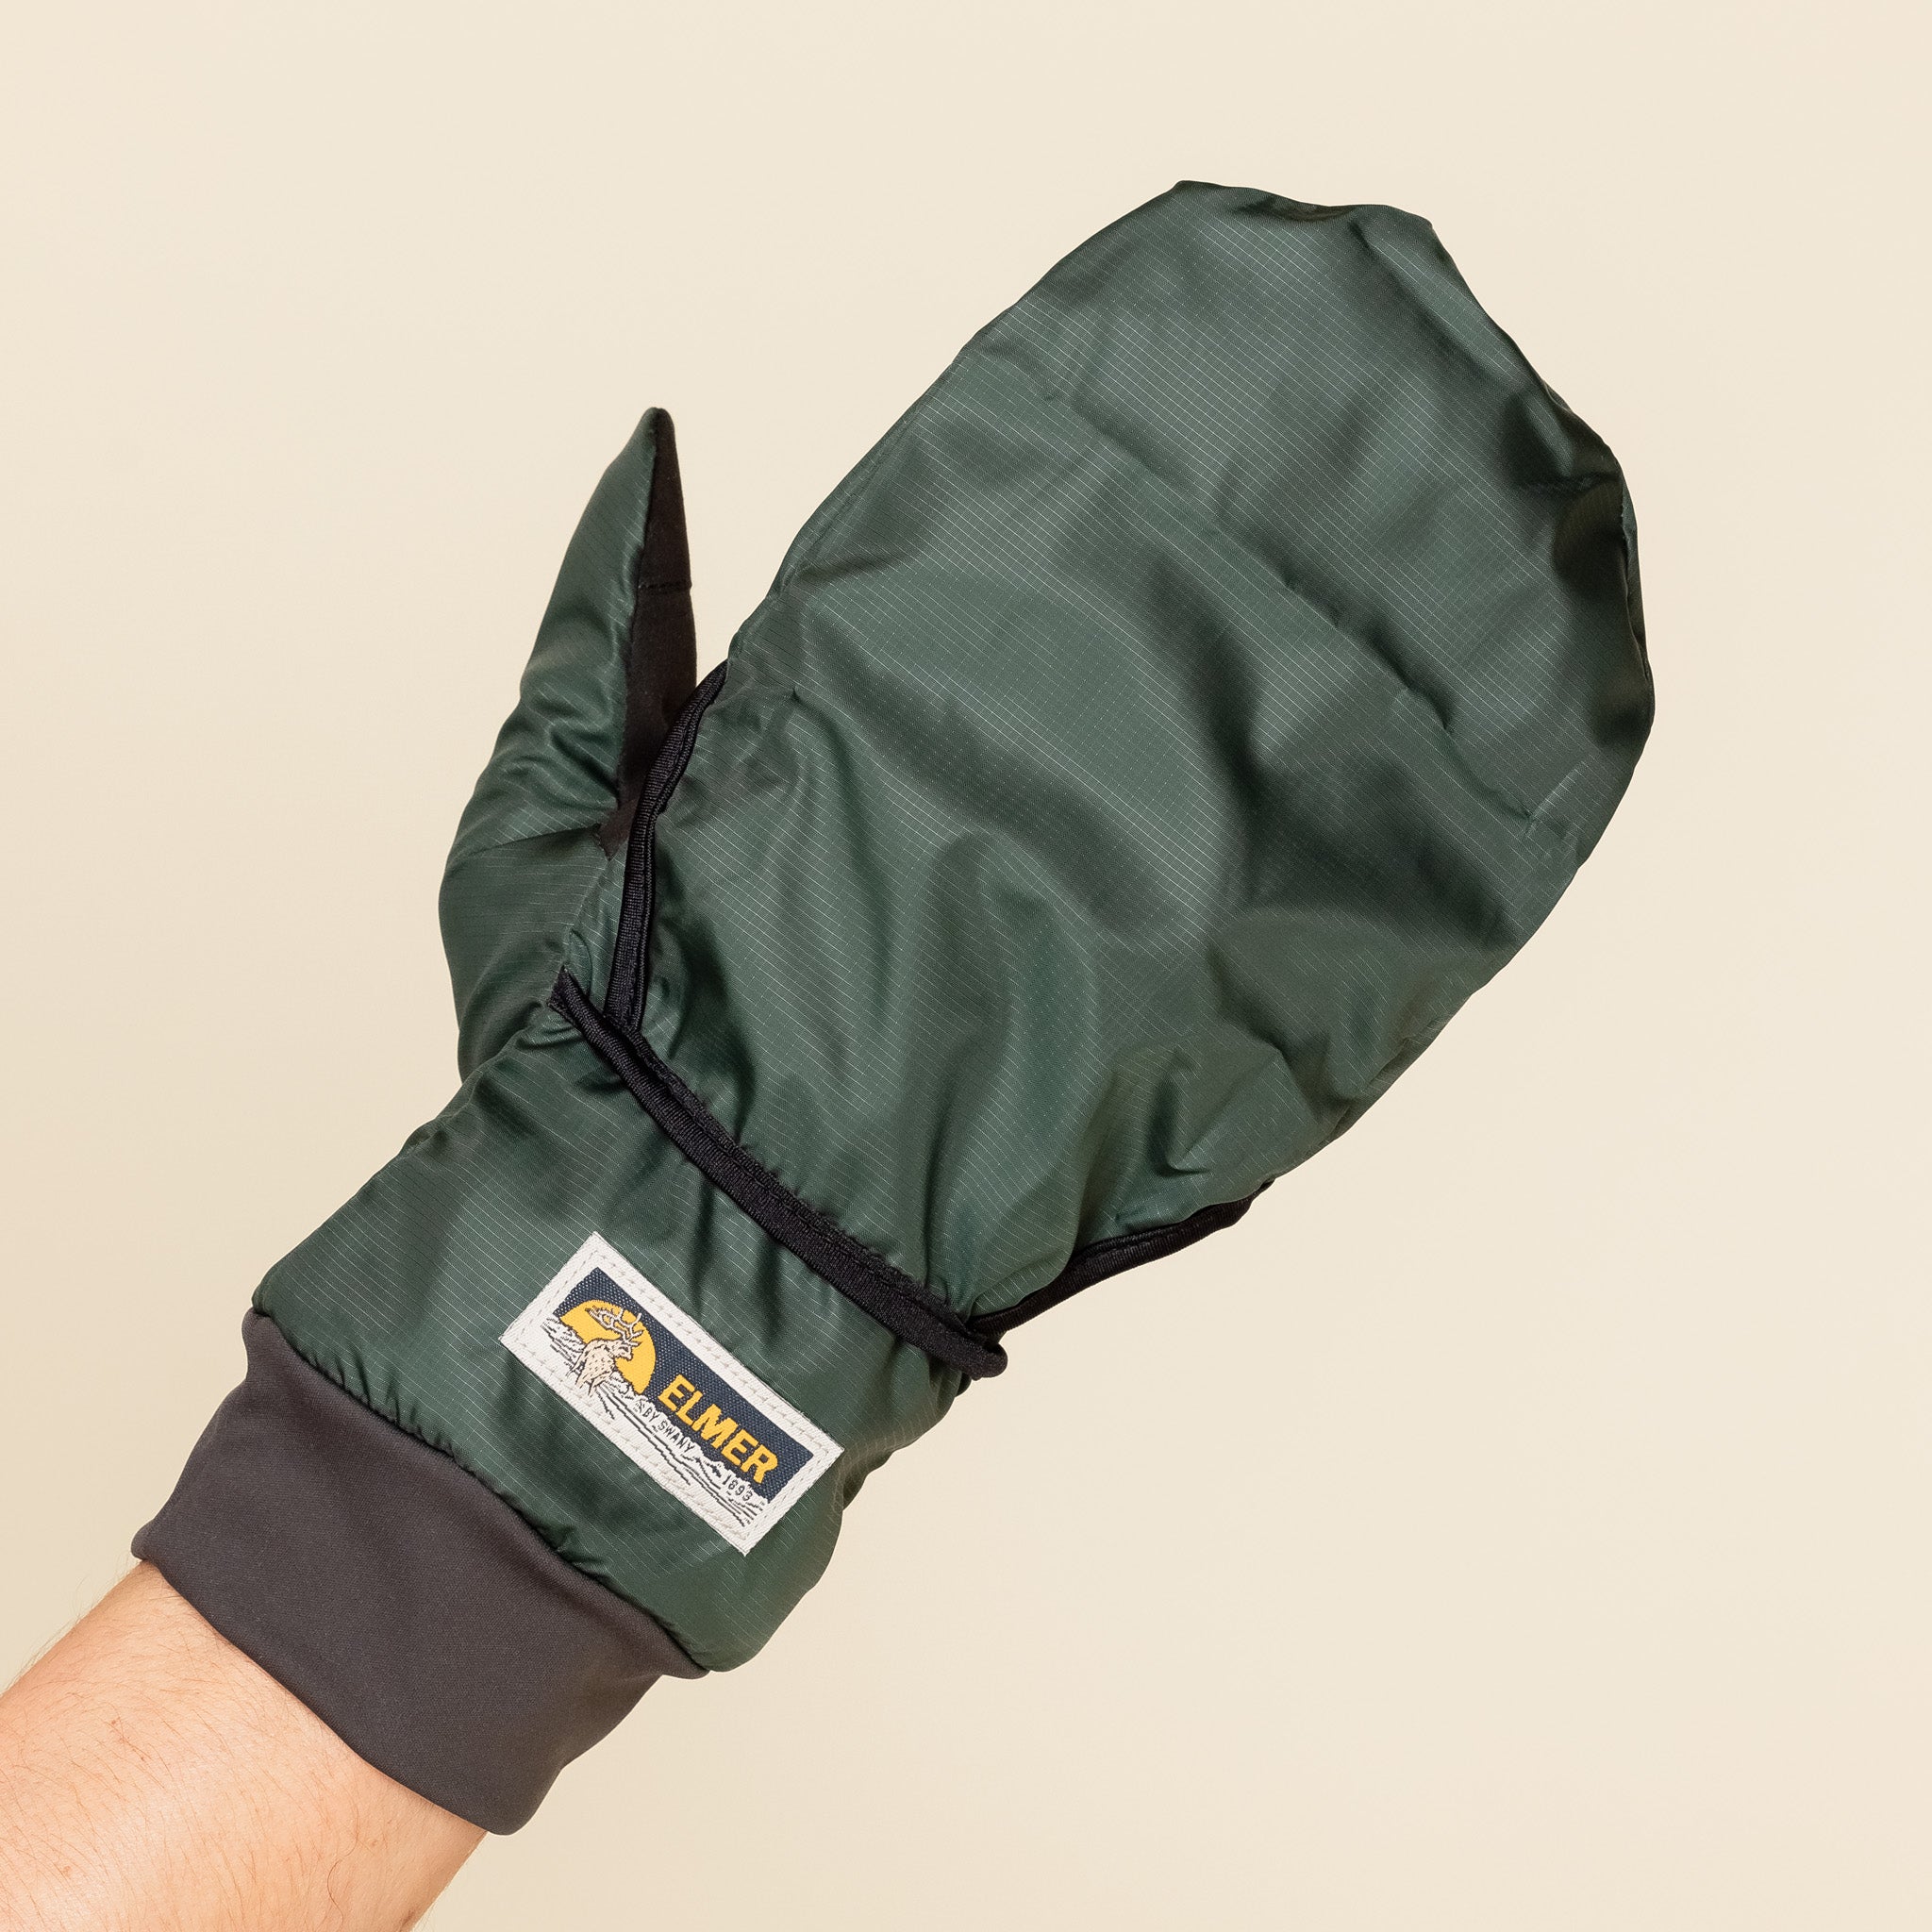 Elmer Gloves - Windstopper City 2 Gloves - Dark Green EM304 "Elmer gloves stockists" "Elmer gloves"